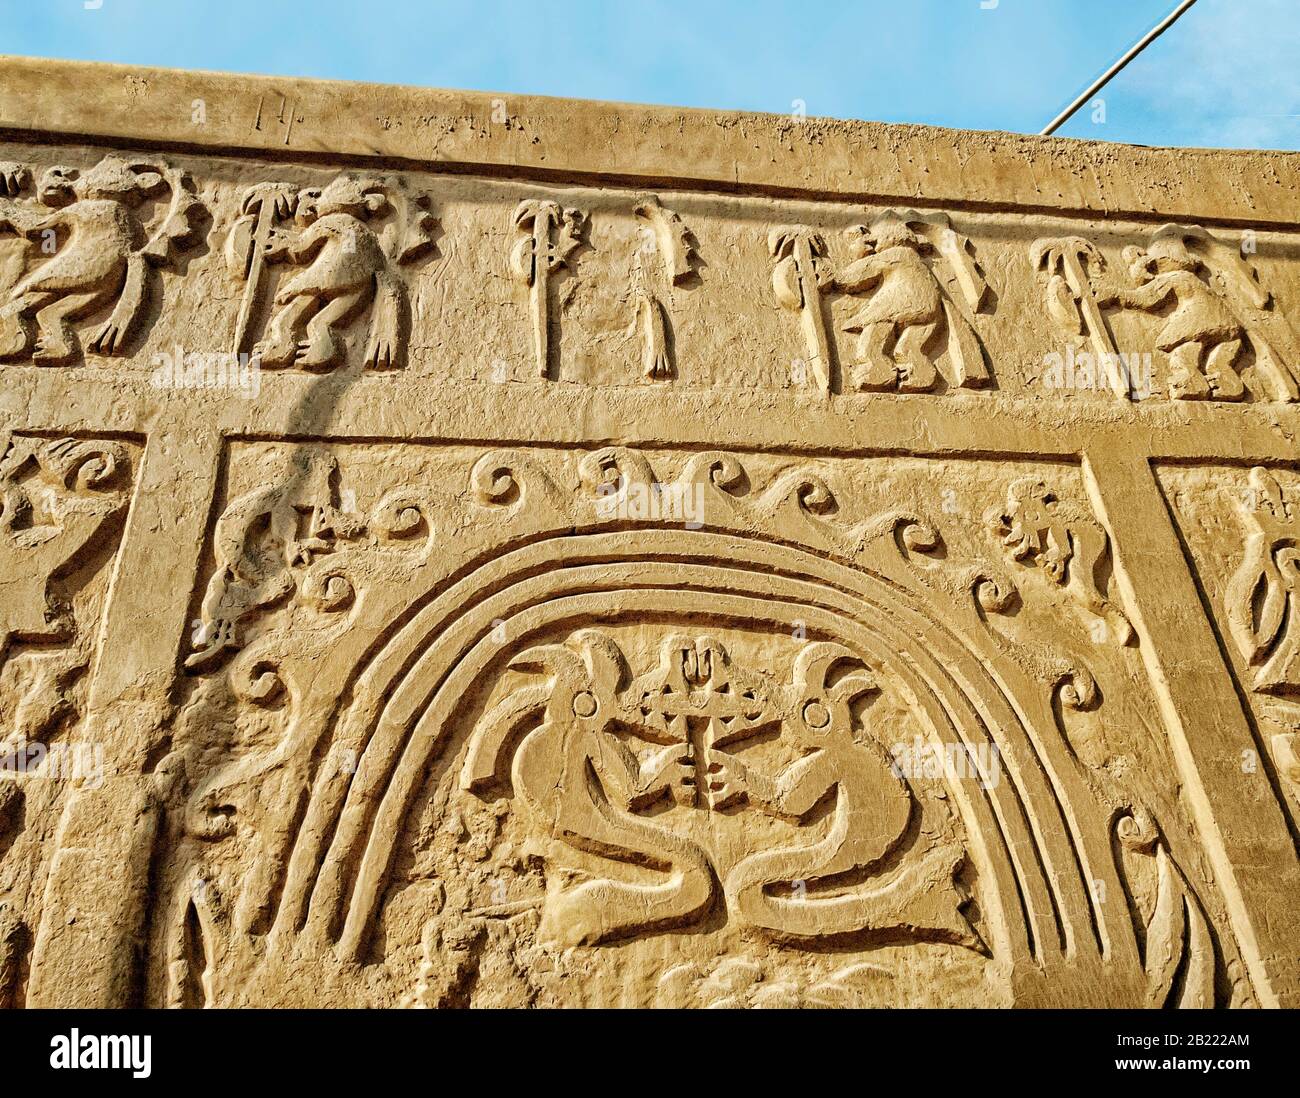 Carving an einer adobe-wand in Trujillo, Peru. Überreste der historischen Stadt Chan Chan, der alten Hauptstadt des Königreichs Chimu, das seine apo erreichte Stockfoto